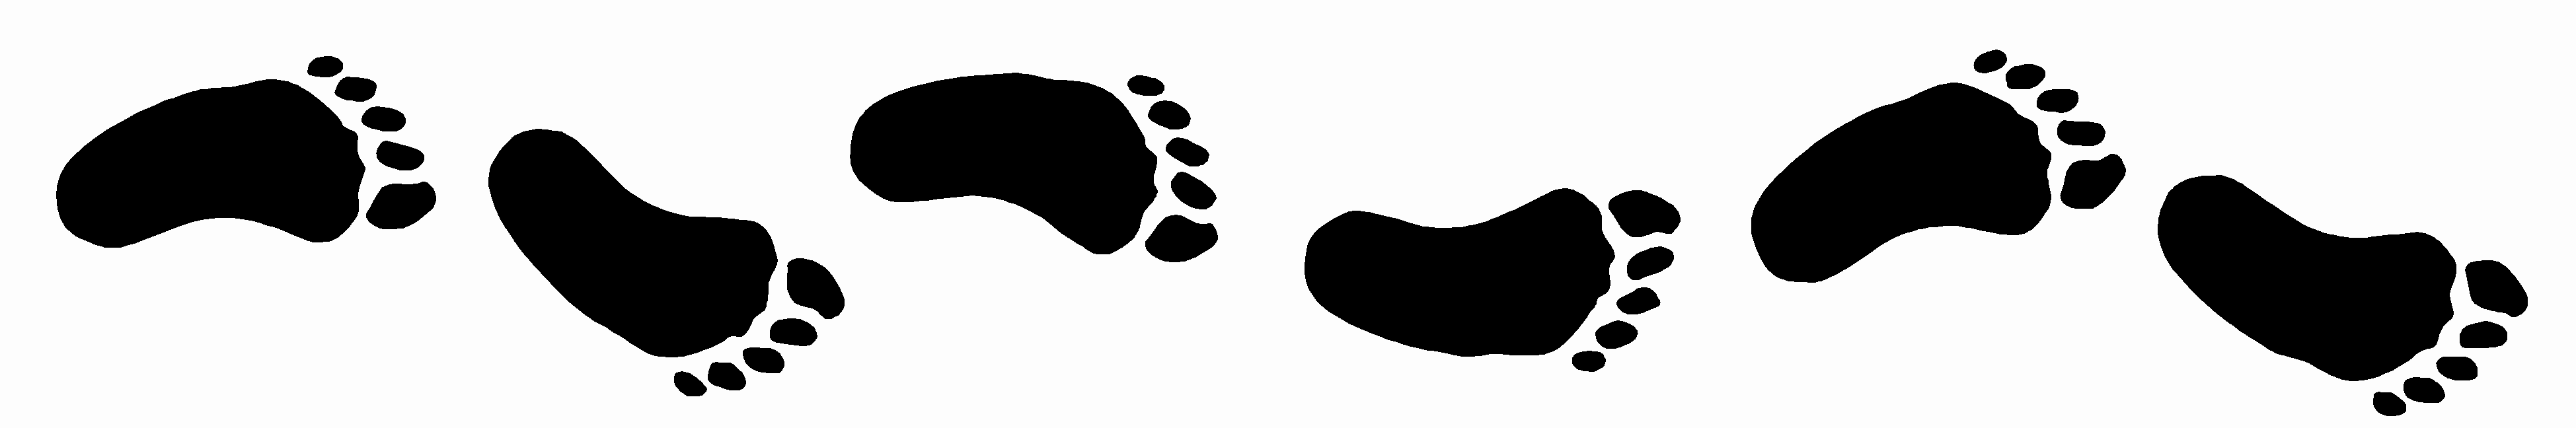 Best Walking Feet Clip Art #21568 - Clipartion.com